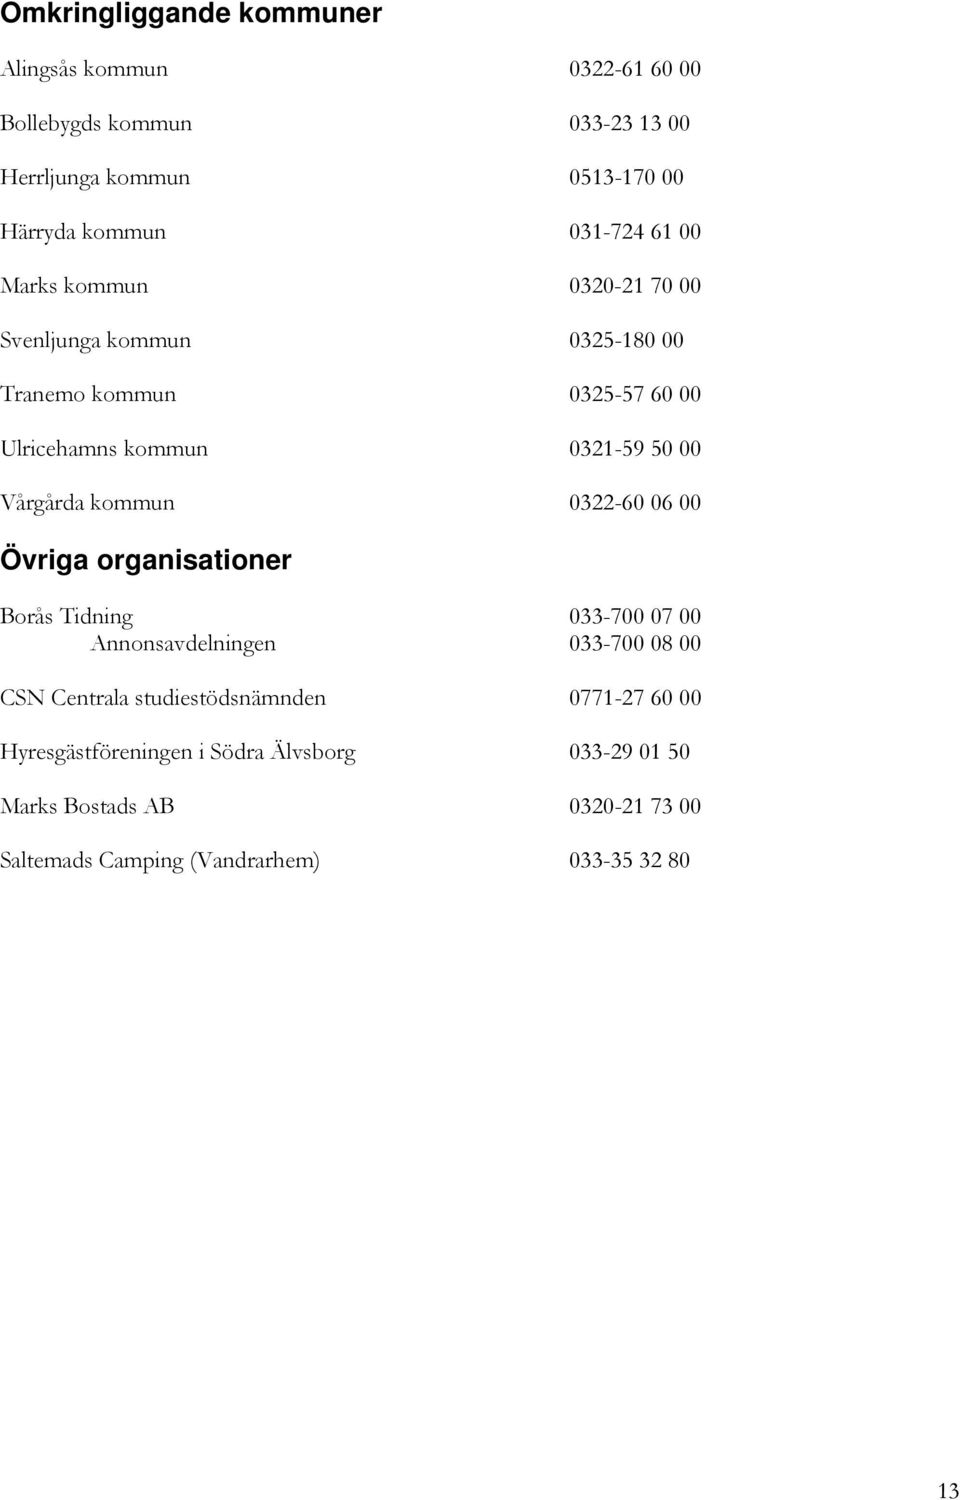 Vårgårda kommun 0322-60 06 00 Övriga organisationer Borås Tidning 033-700 07 00 Annonsavdelningen 033-700 08 00 CSN Centrala